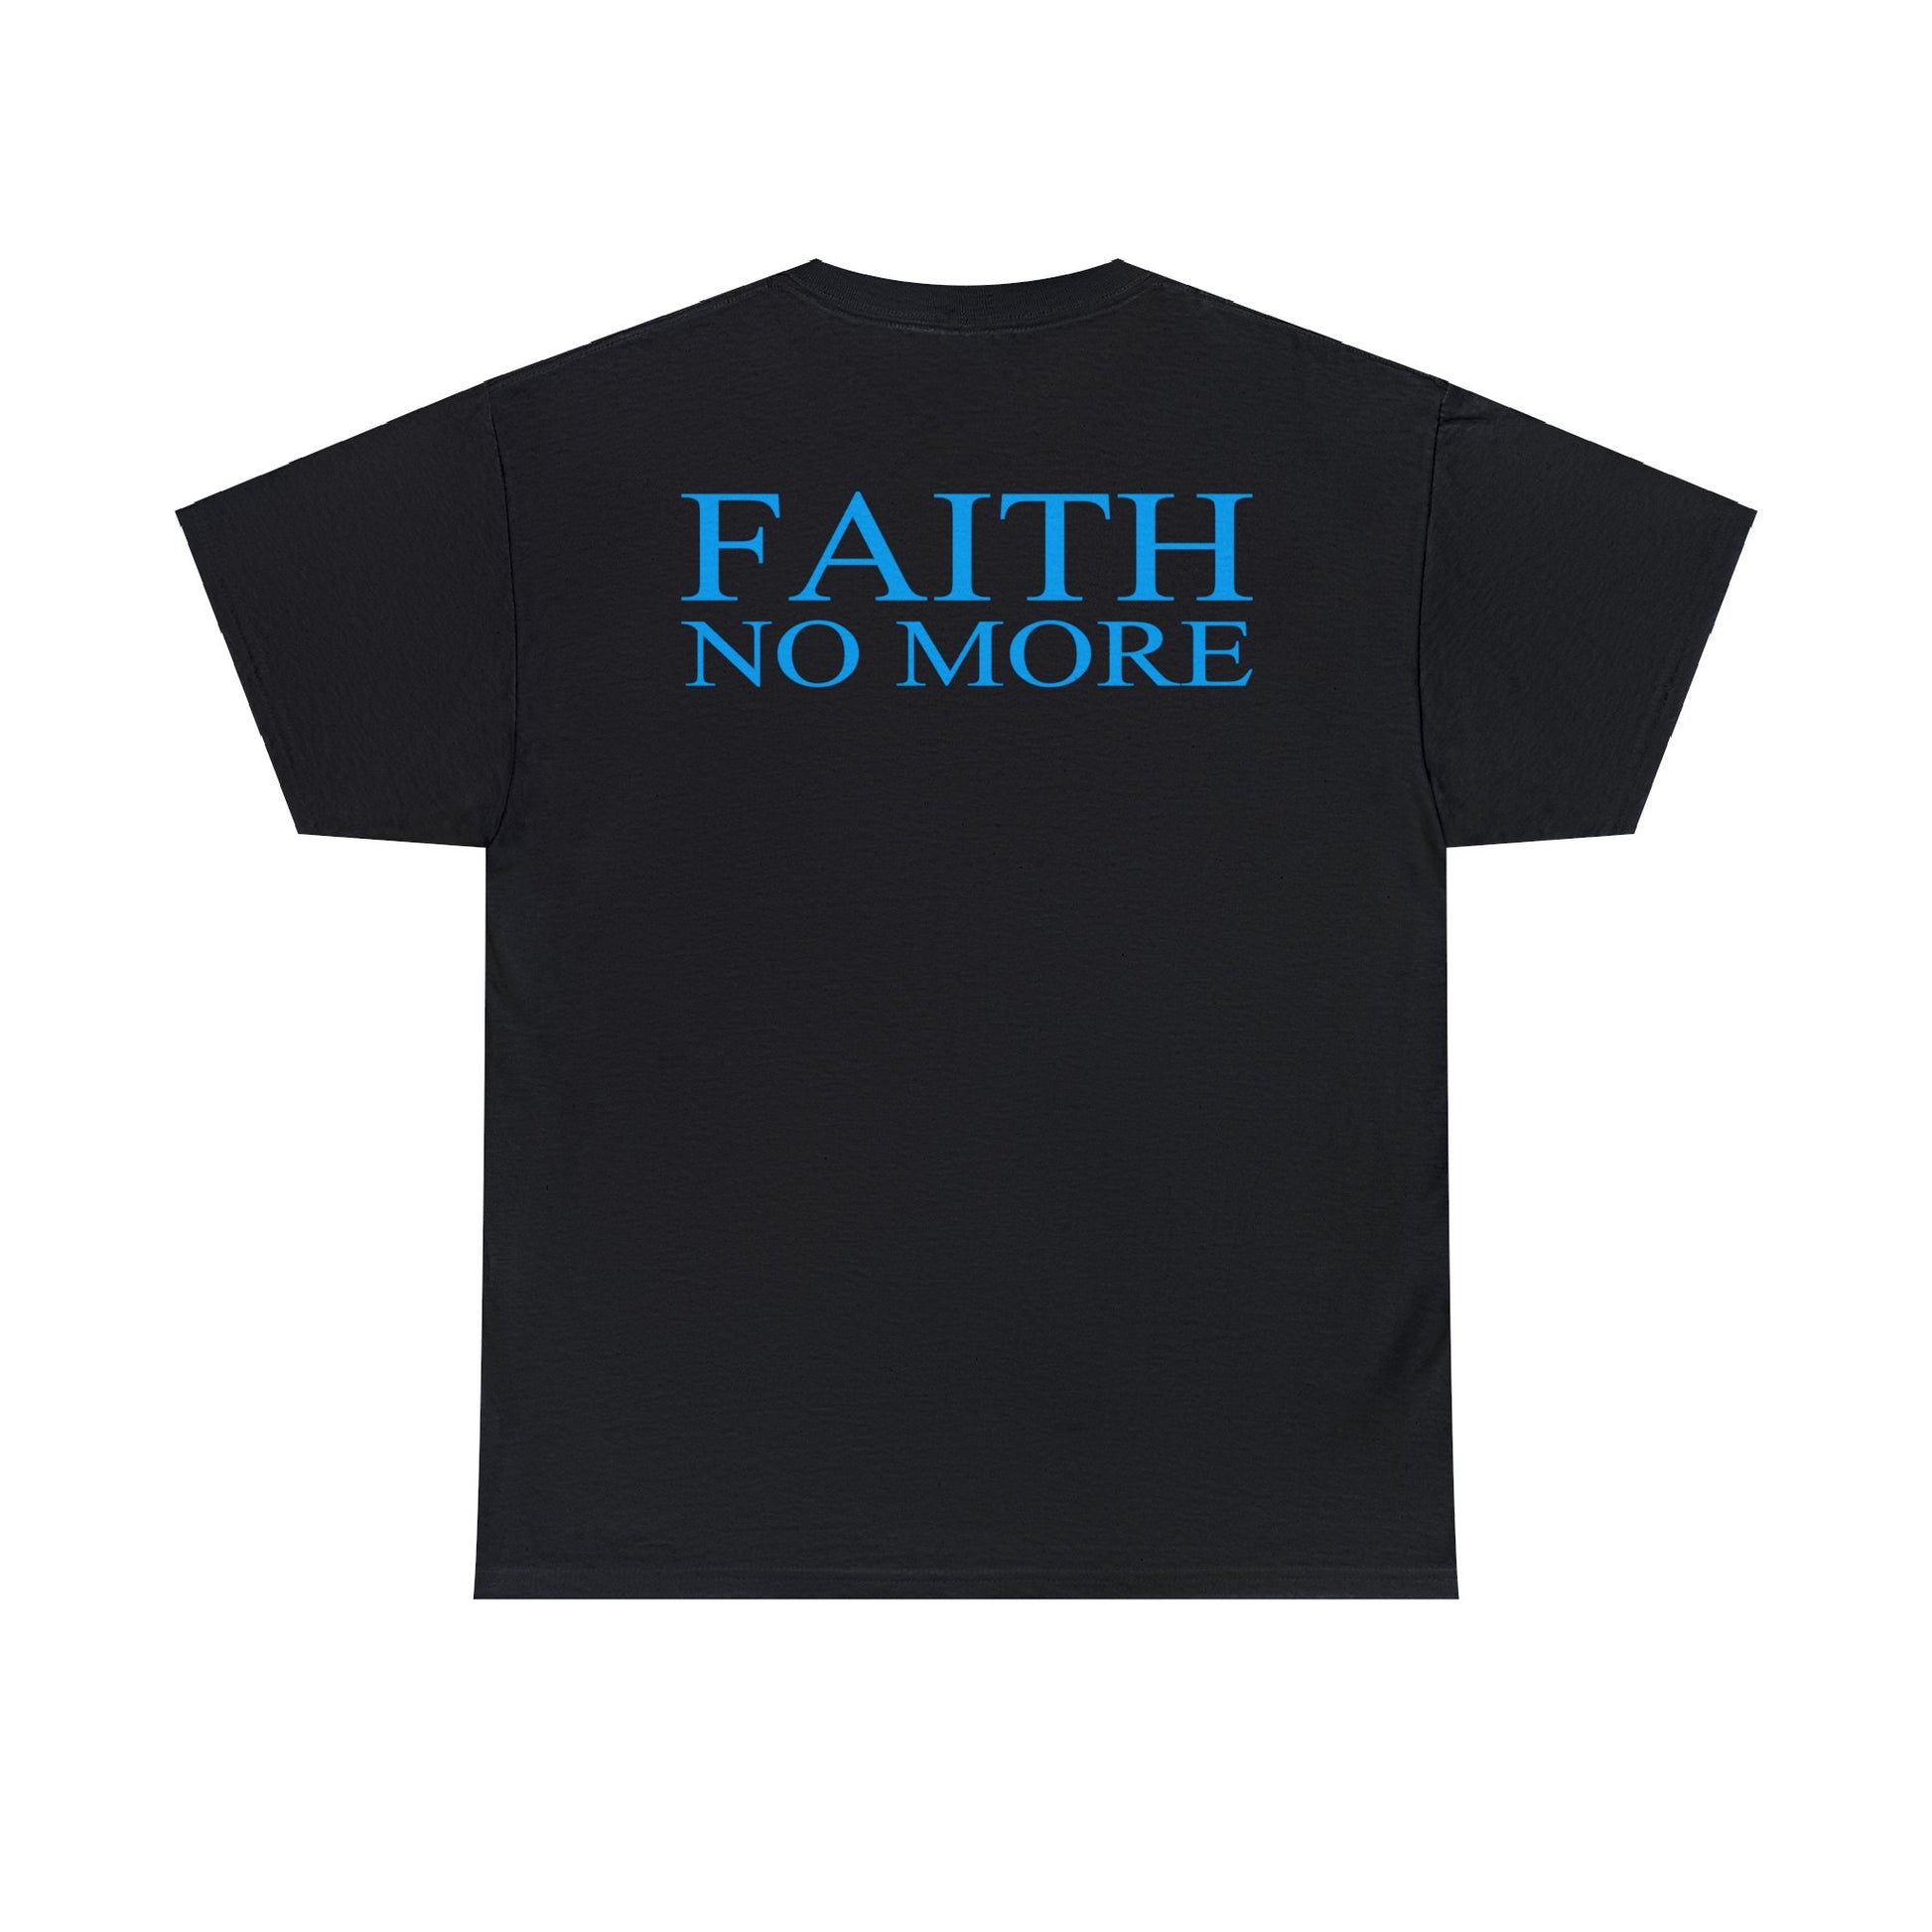 FAITH NO MORE Angel Dust Tour 1992 T-shirt for Sale